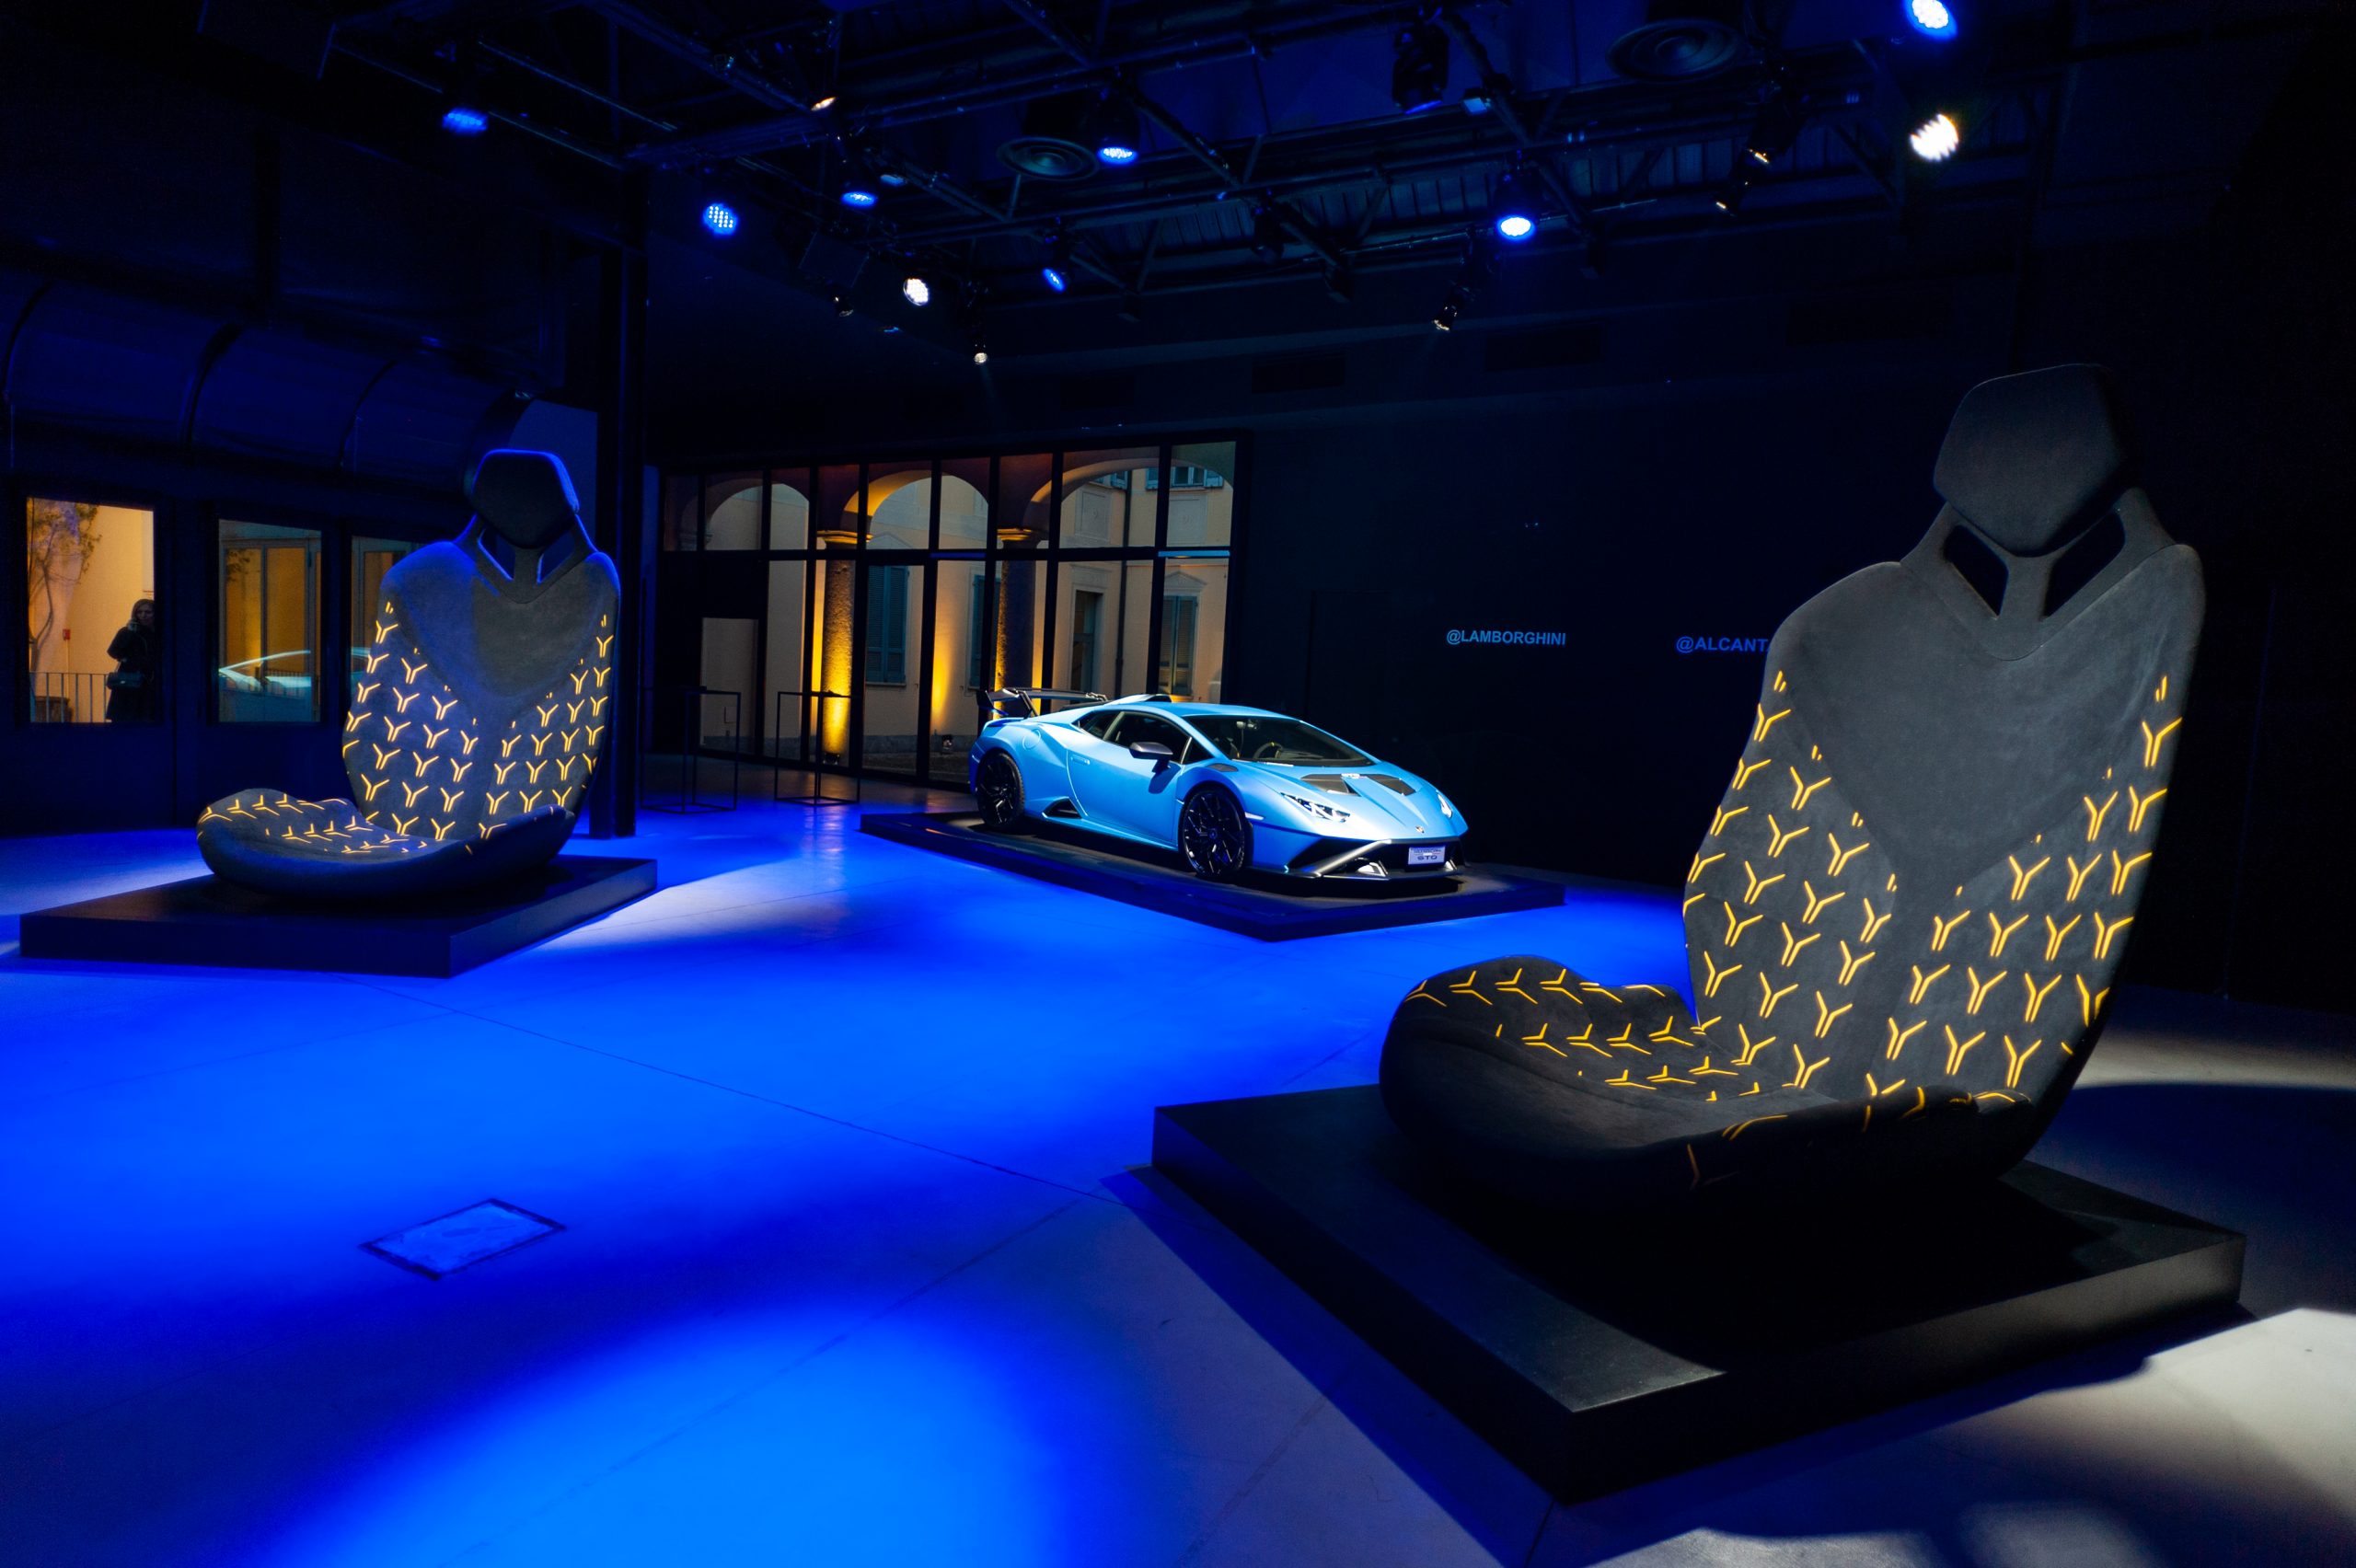 Alcantara in collaborazione con Lamborghini per l'evento "Customization is the key"